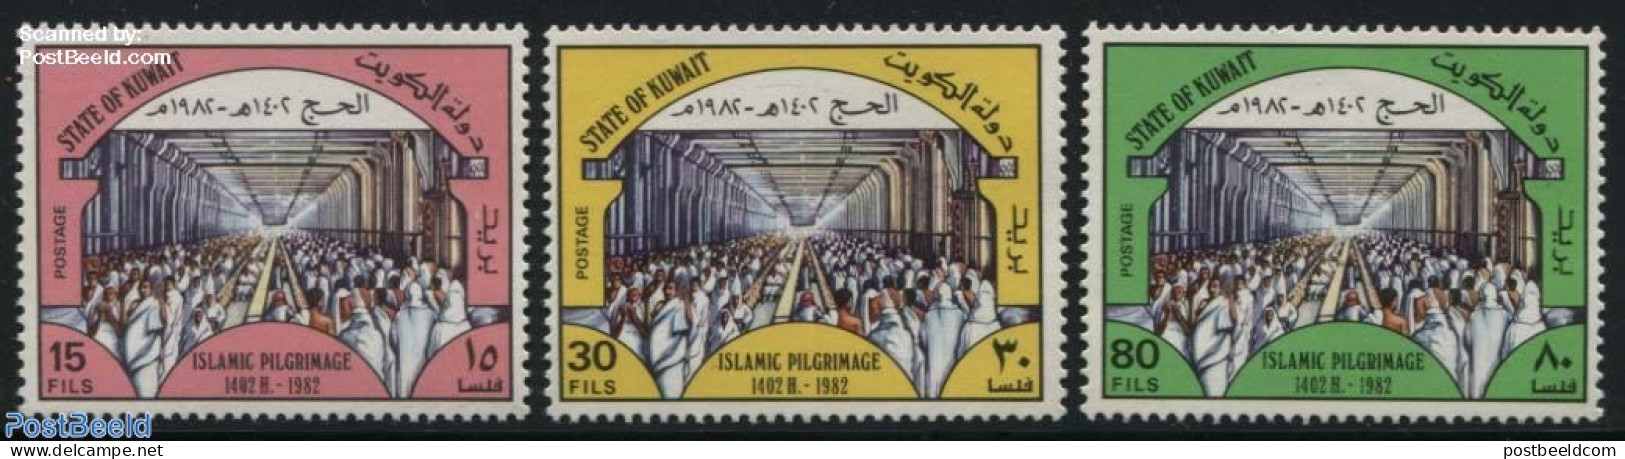 Kuwait 1982 Mecca Pilgrims 3v, Mint NH, Religion - Religion - Kuwait